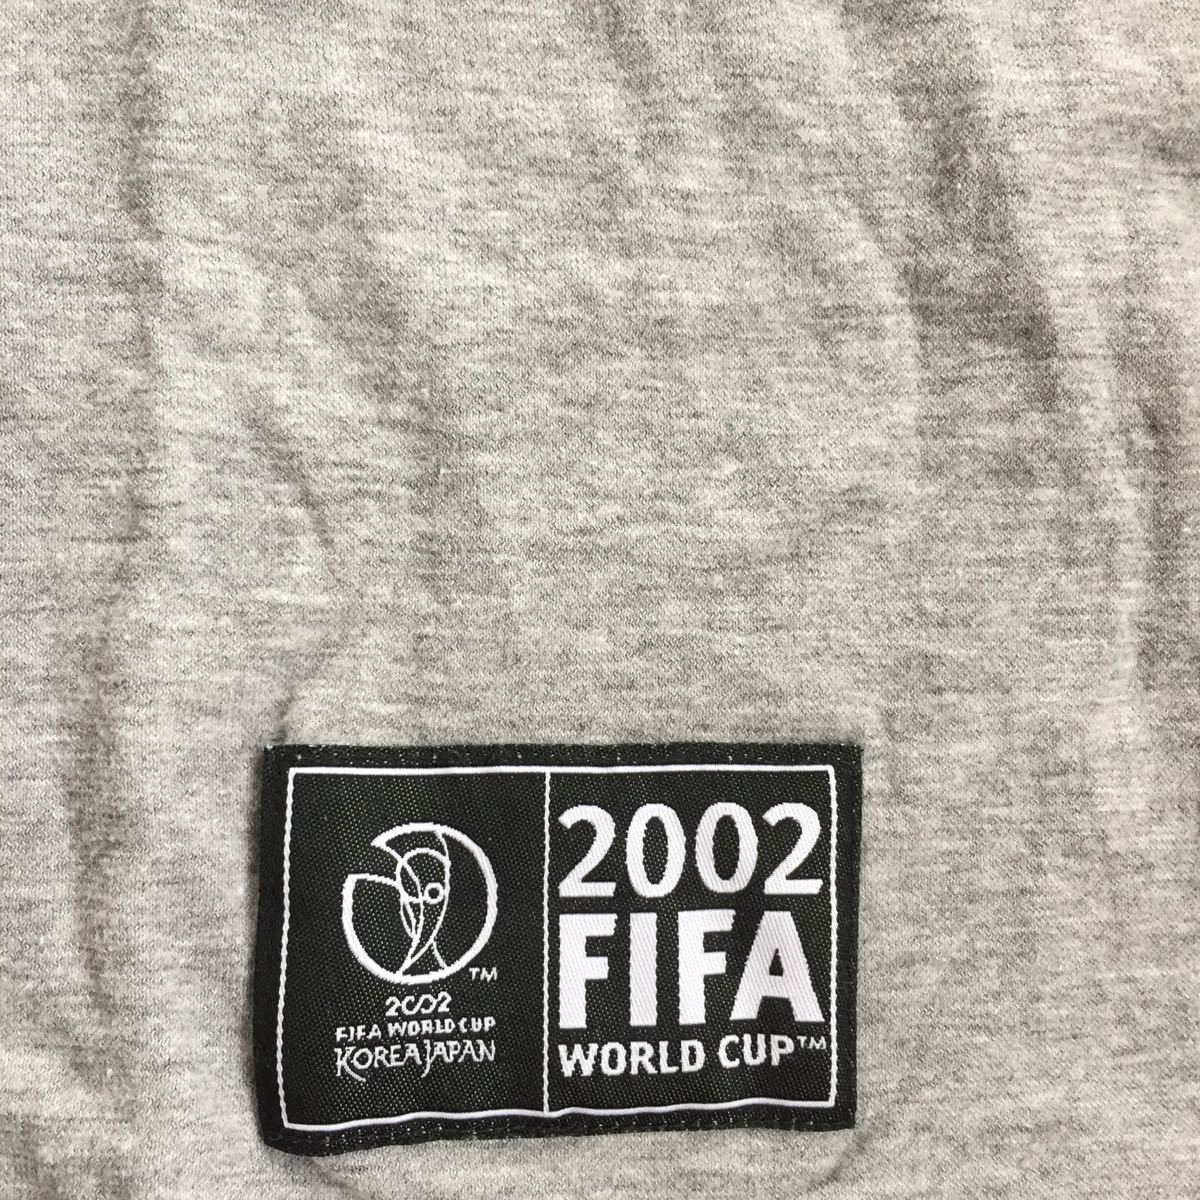 半袖Tシャツ グレー サッカー 2002 FIFA WORLD CUP 綿100% Mサイズ 美品_画像3